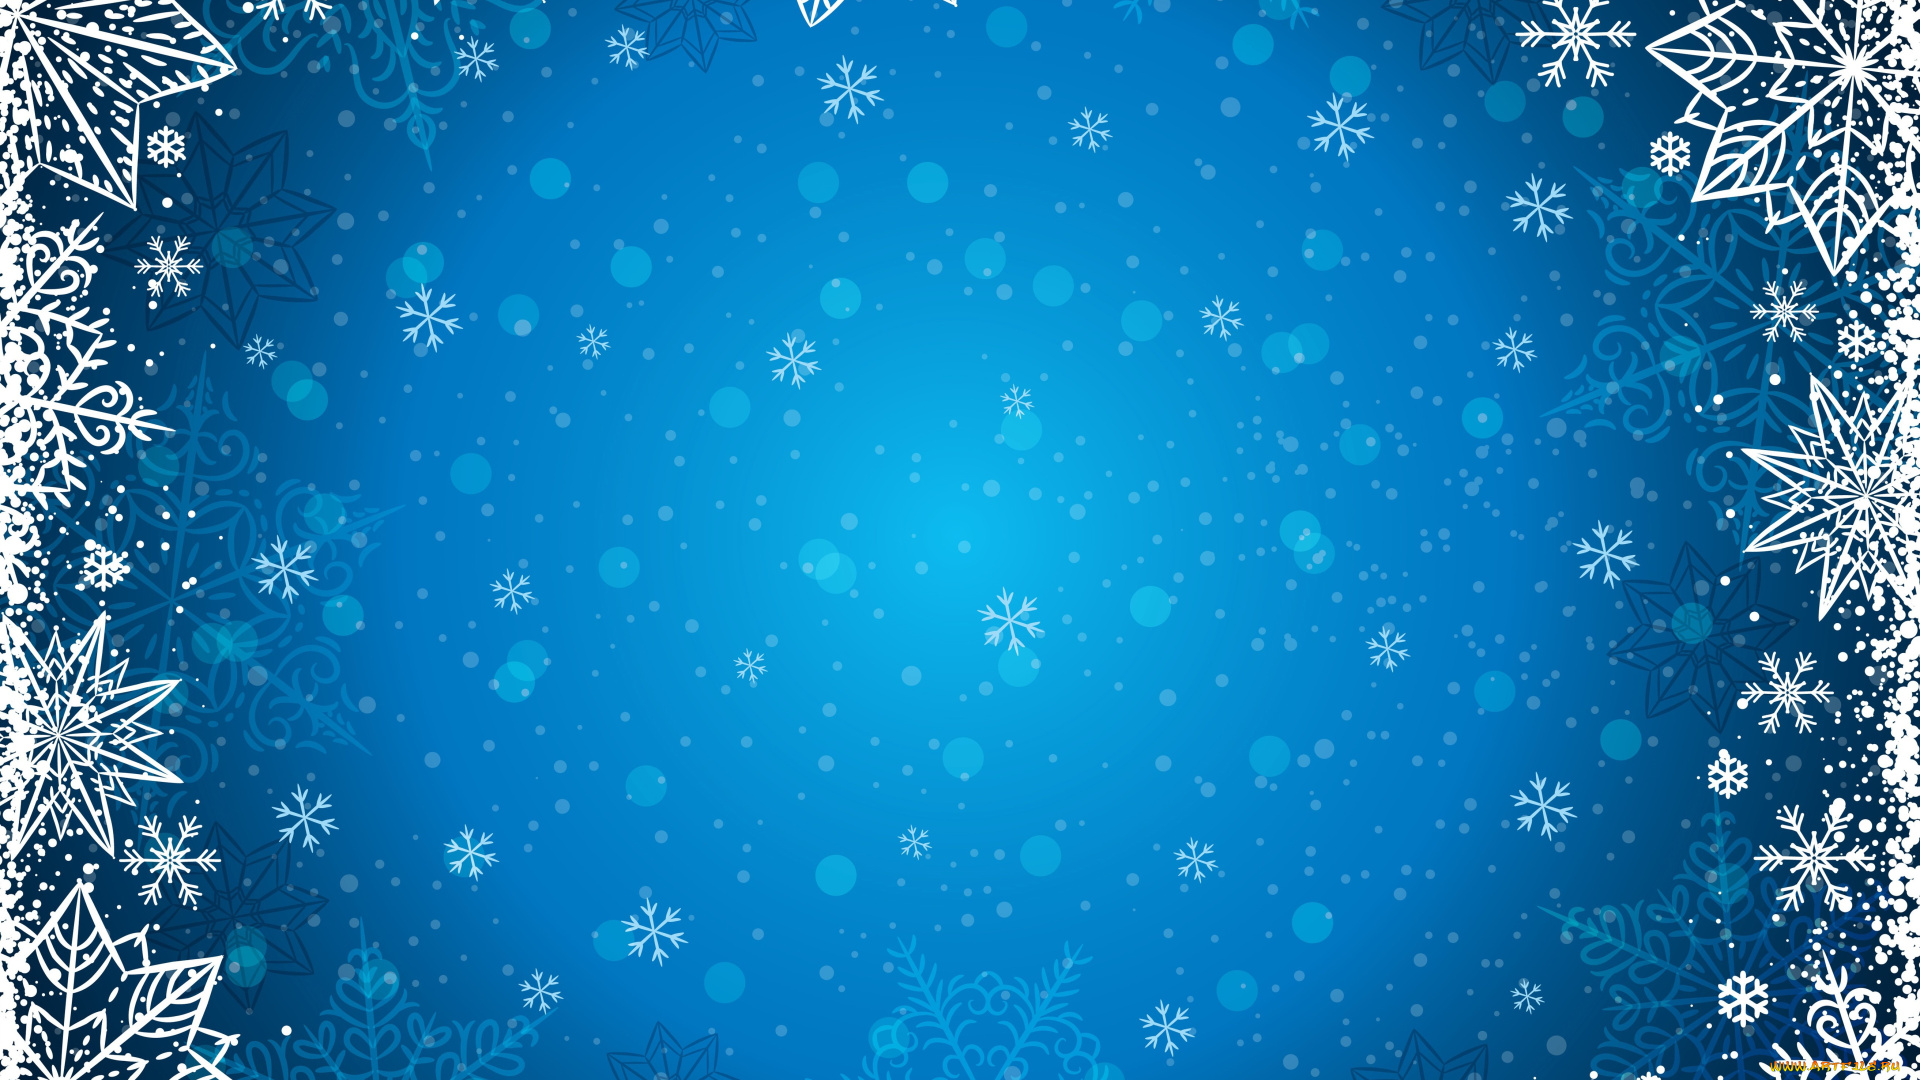 праздничные, снежинки, и, звёздочки, зима, снежинки, фон, winter, background, snowflakes